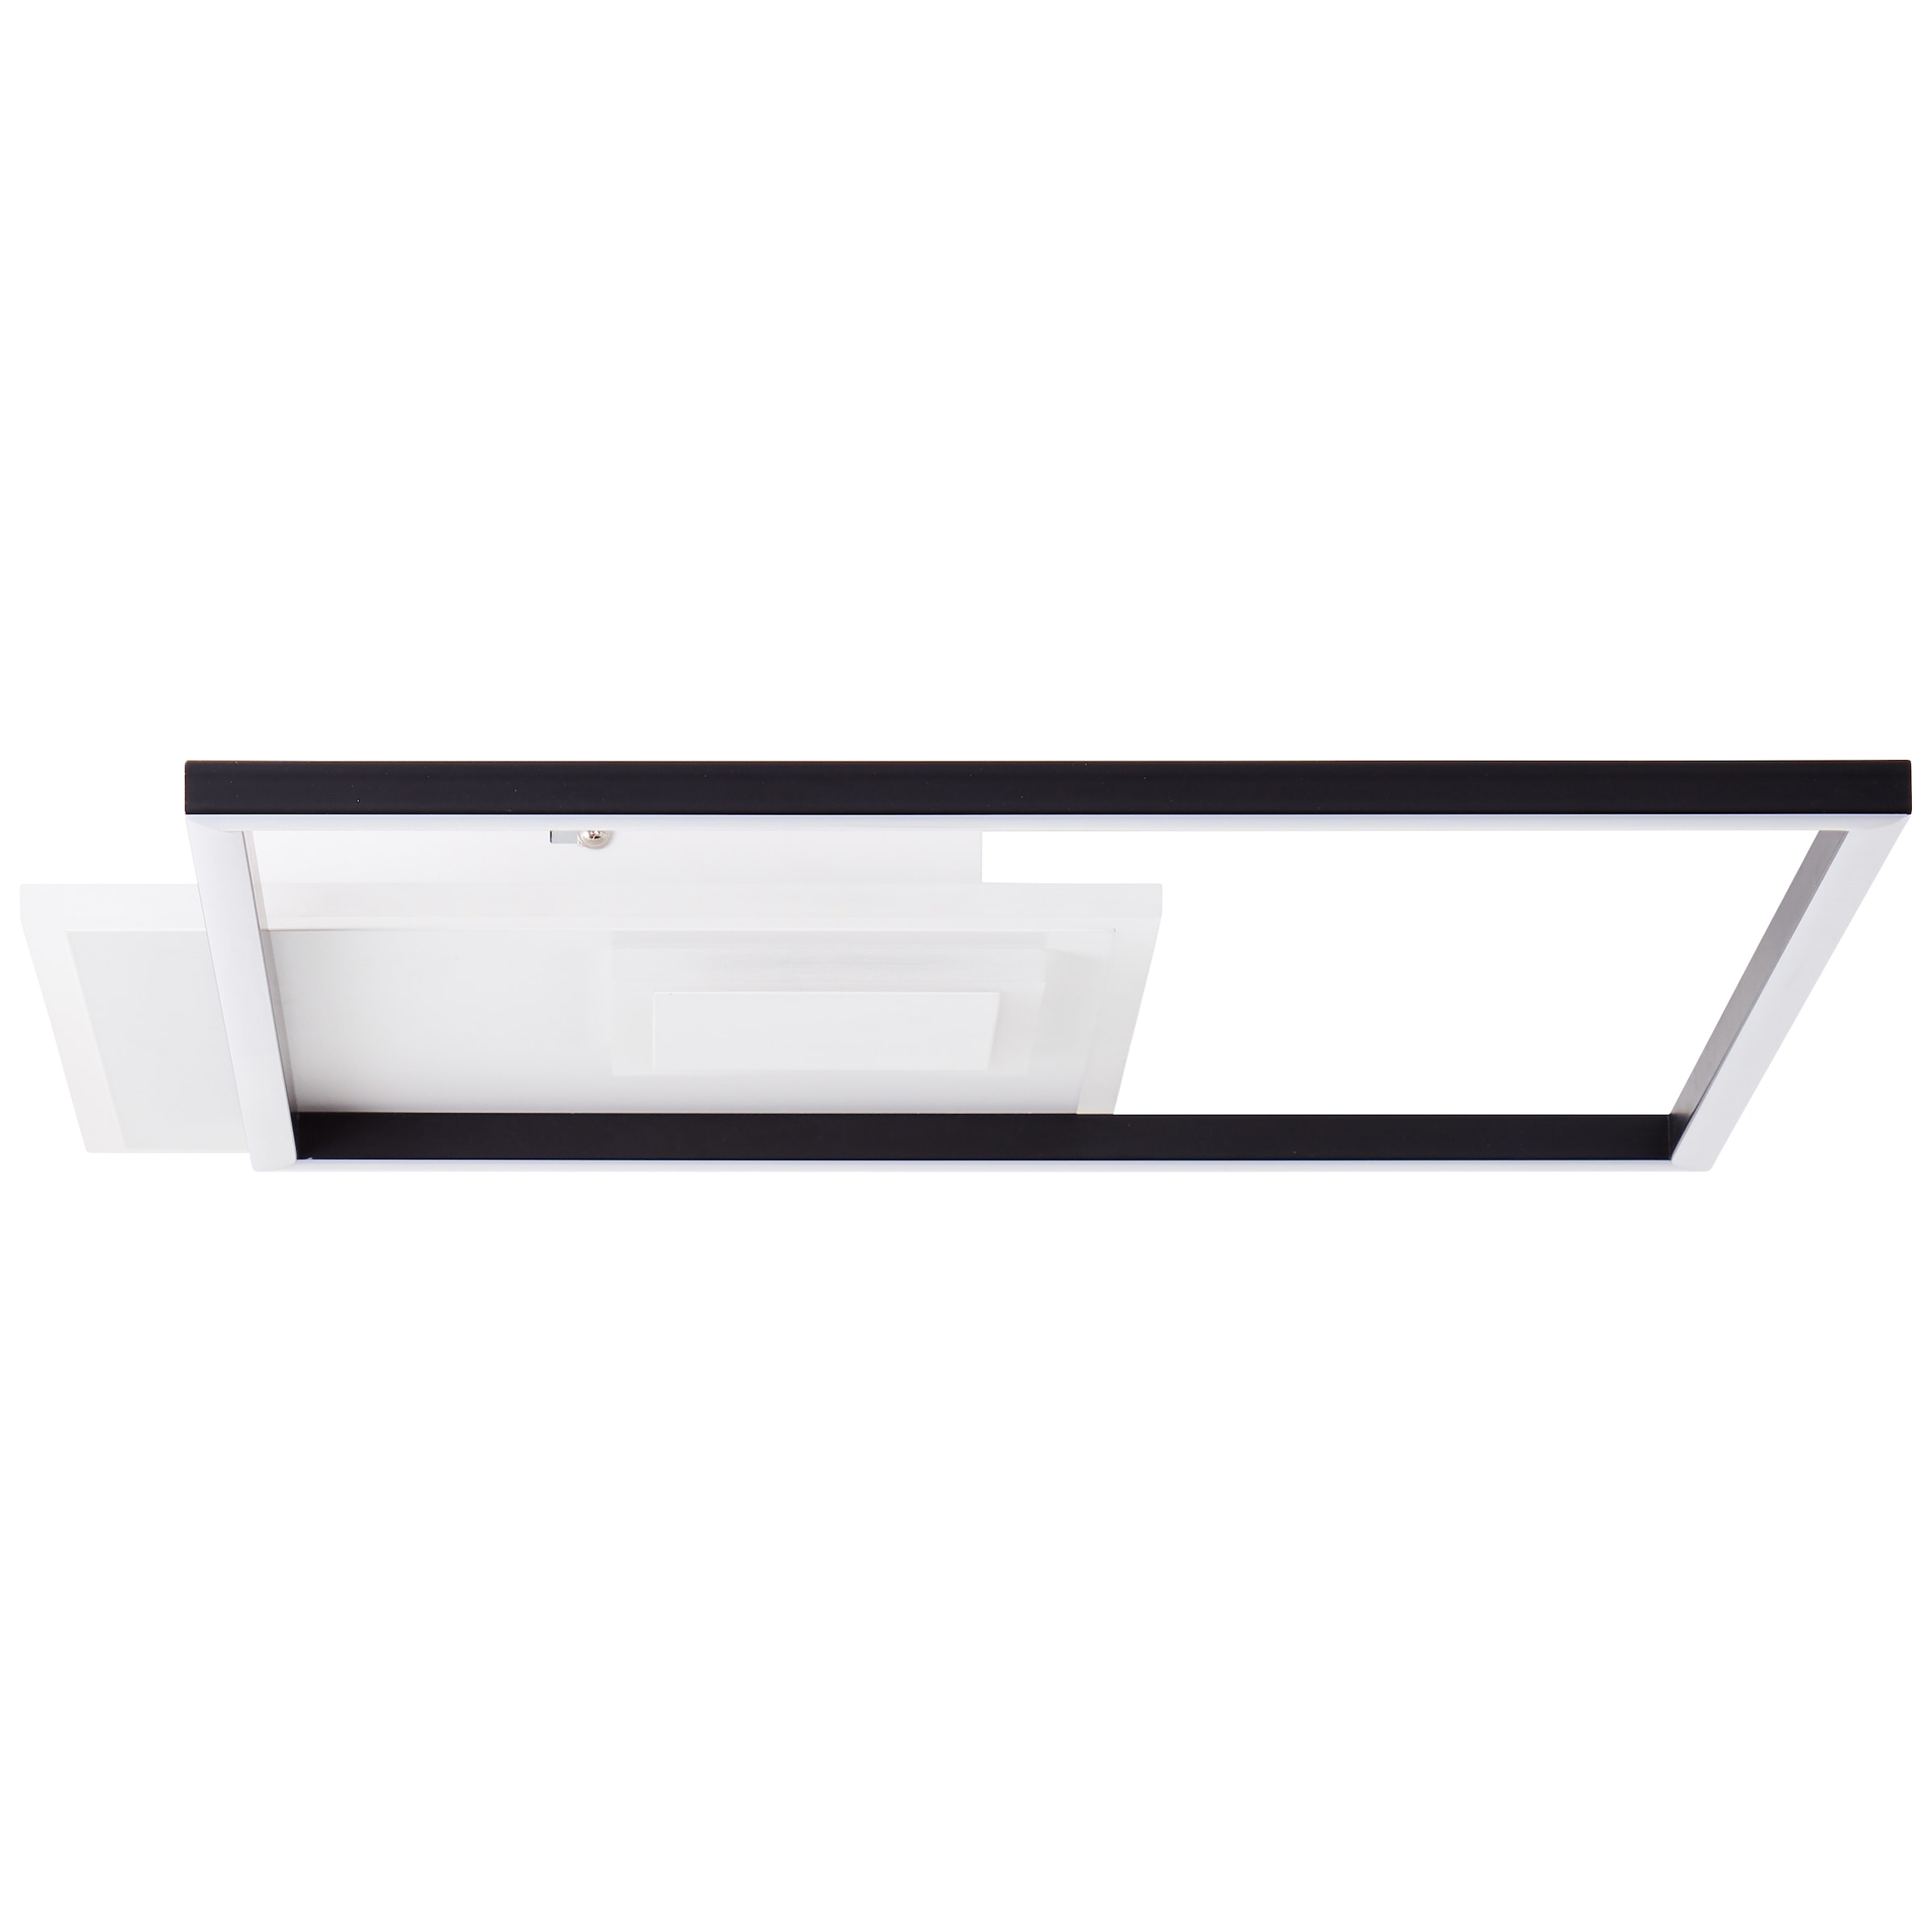 Brilliant LED Deckenleuchte »Iorgo«, 43 x 43 cm, 4300 lm,  Metall/Kunststoff, schwarz/weiß online bei OTTO